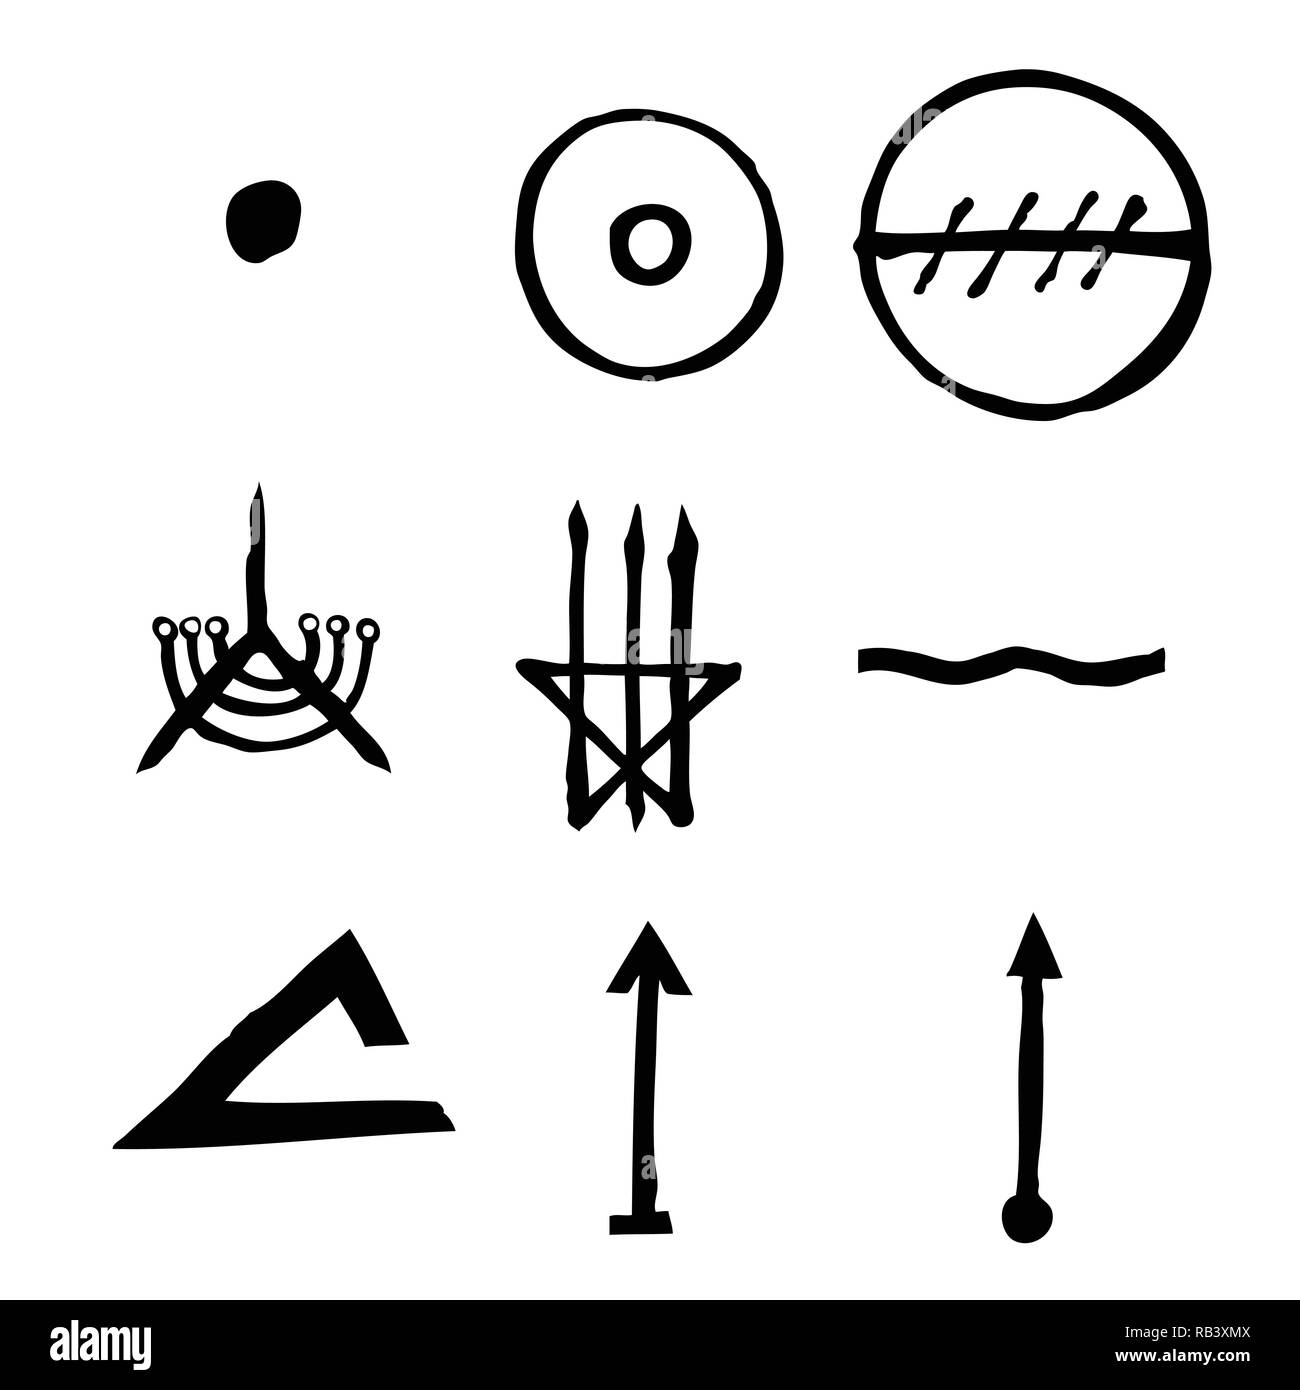 Conjunto de elementos de diseño de símbolos esotéricos. Imaginario alquimia manuscrita signos, espacio, espiritualidad, inspirada por el misticismo, la francmasonería, la astrología. Vecto Ilustración del Vector